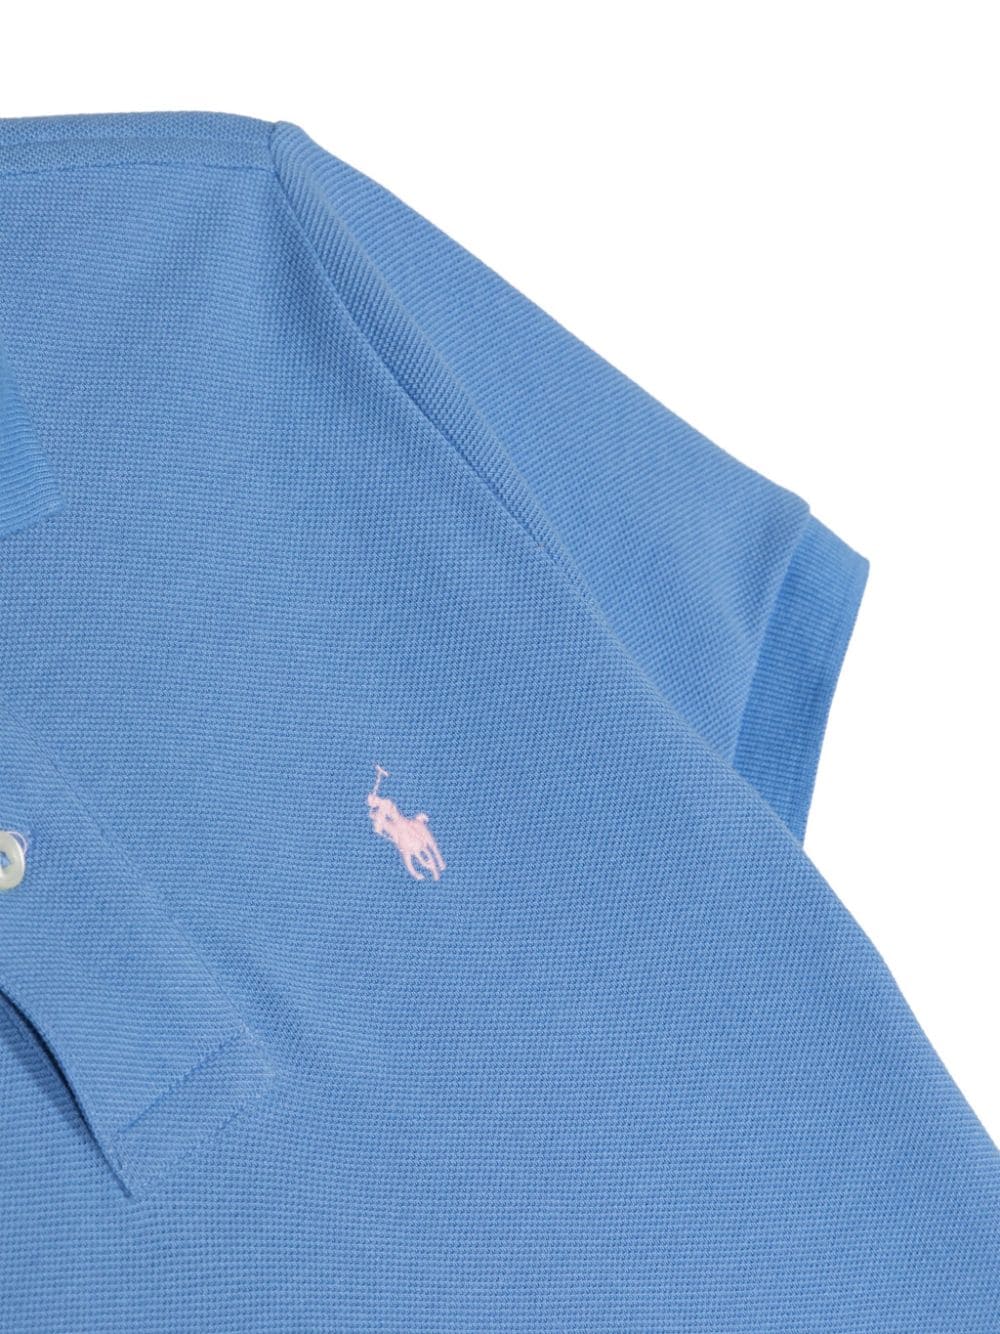 Light blue polo shirt for boys with logo